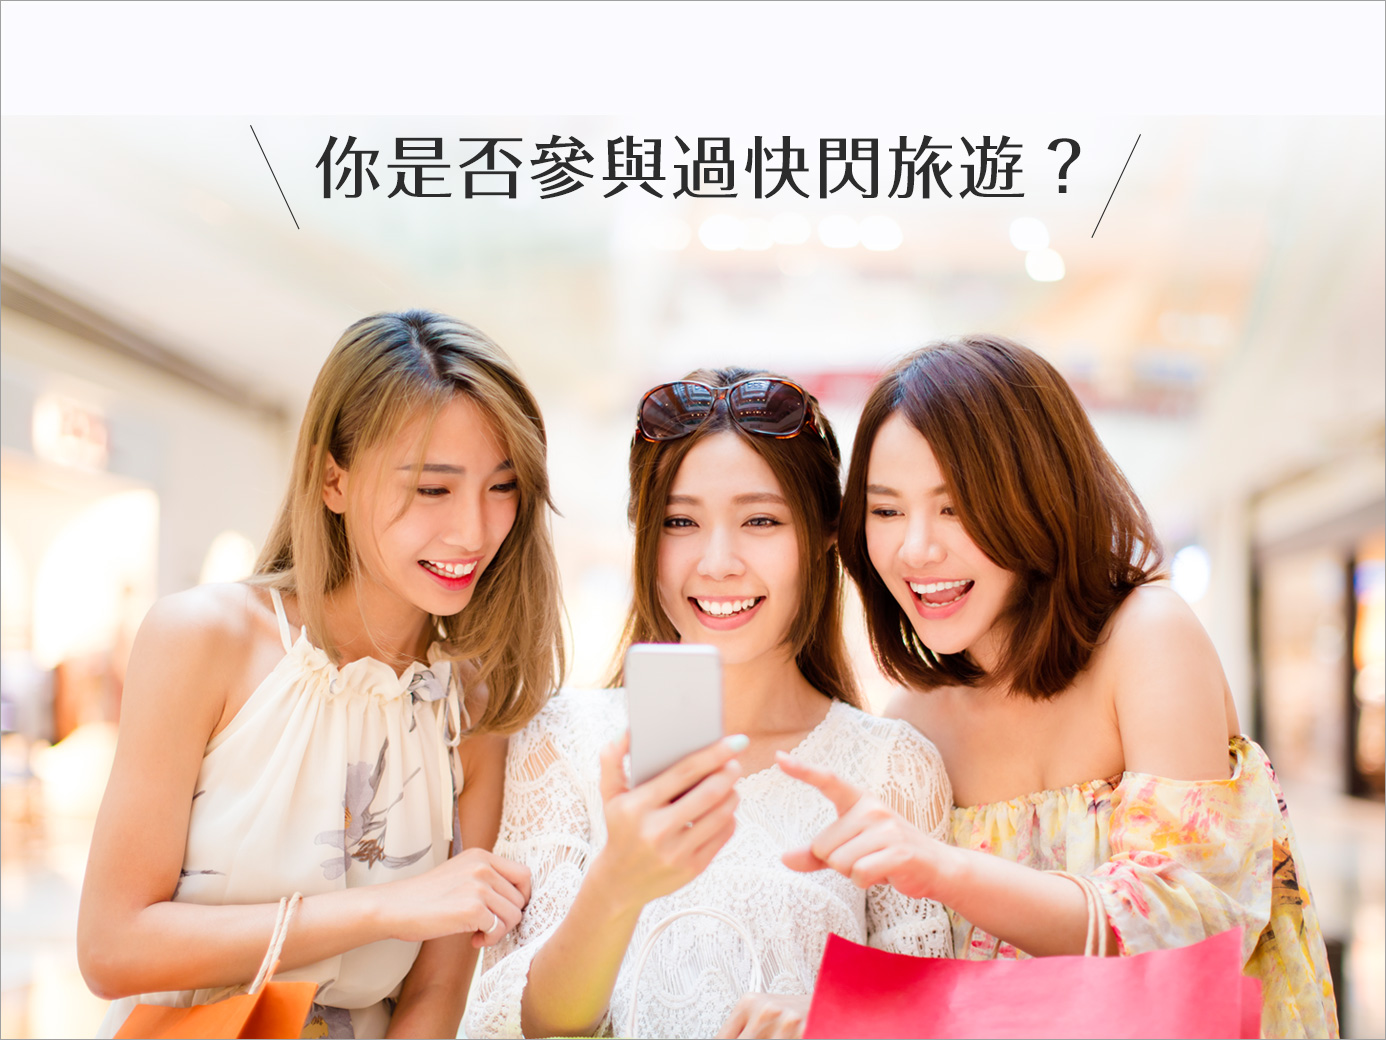 近年周圍朋友流行快閃旅行，就是一天來回日本或香港的購物旅行！而你是否曾經參與過這種的旅遊行程呢？